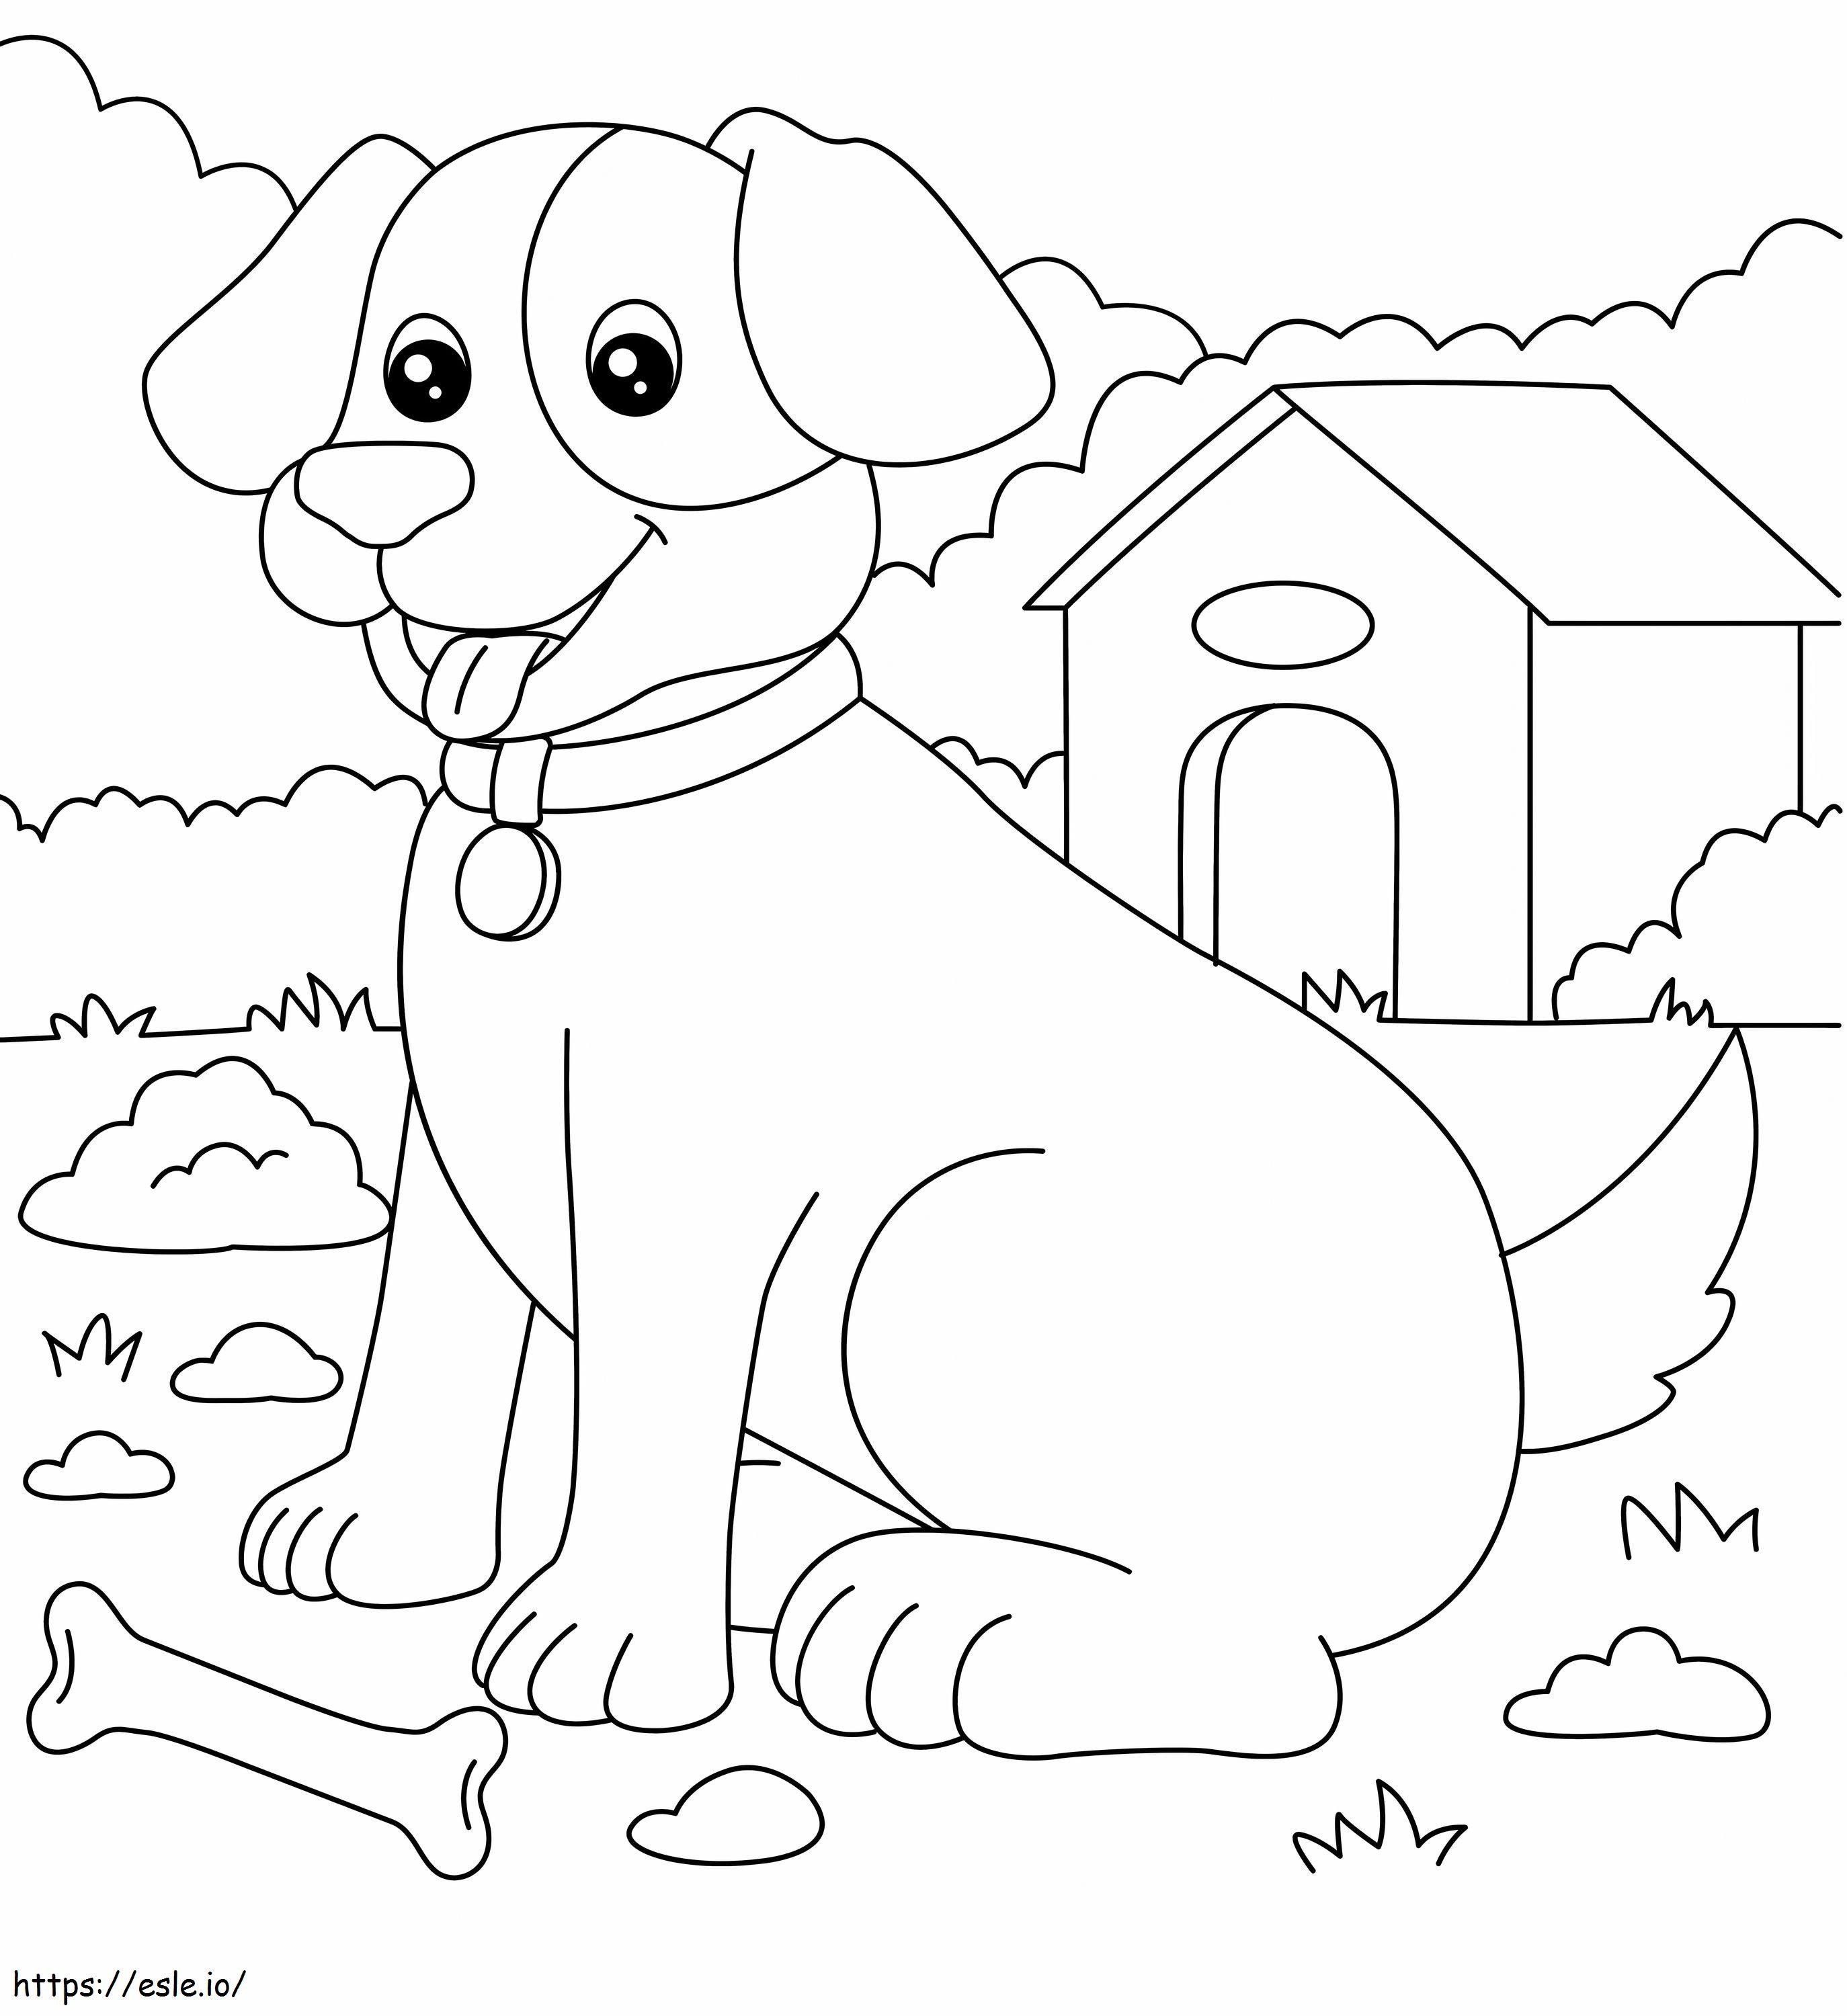 Coloriage Chien osseux et chien domestique à imprimer dessin